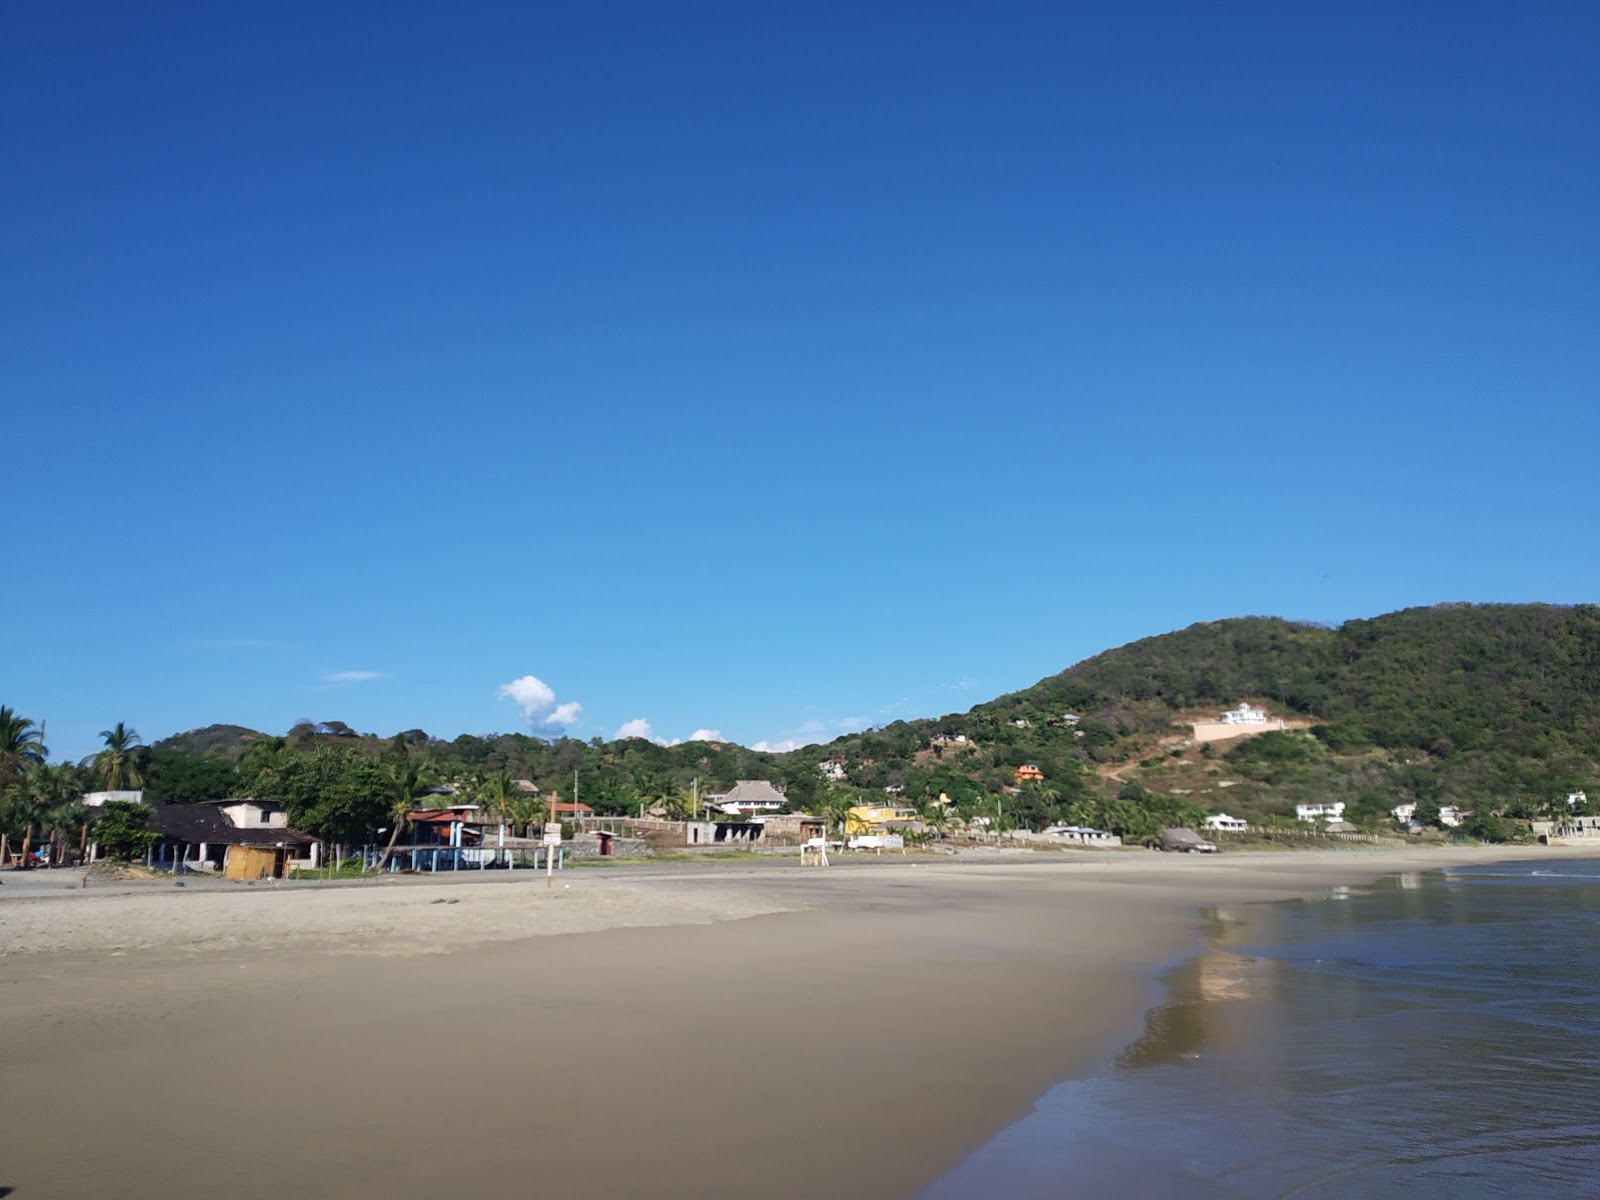 Fotografie cu Playa Puerto Vicente cu o suprafață de apa turcoaz